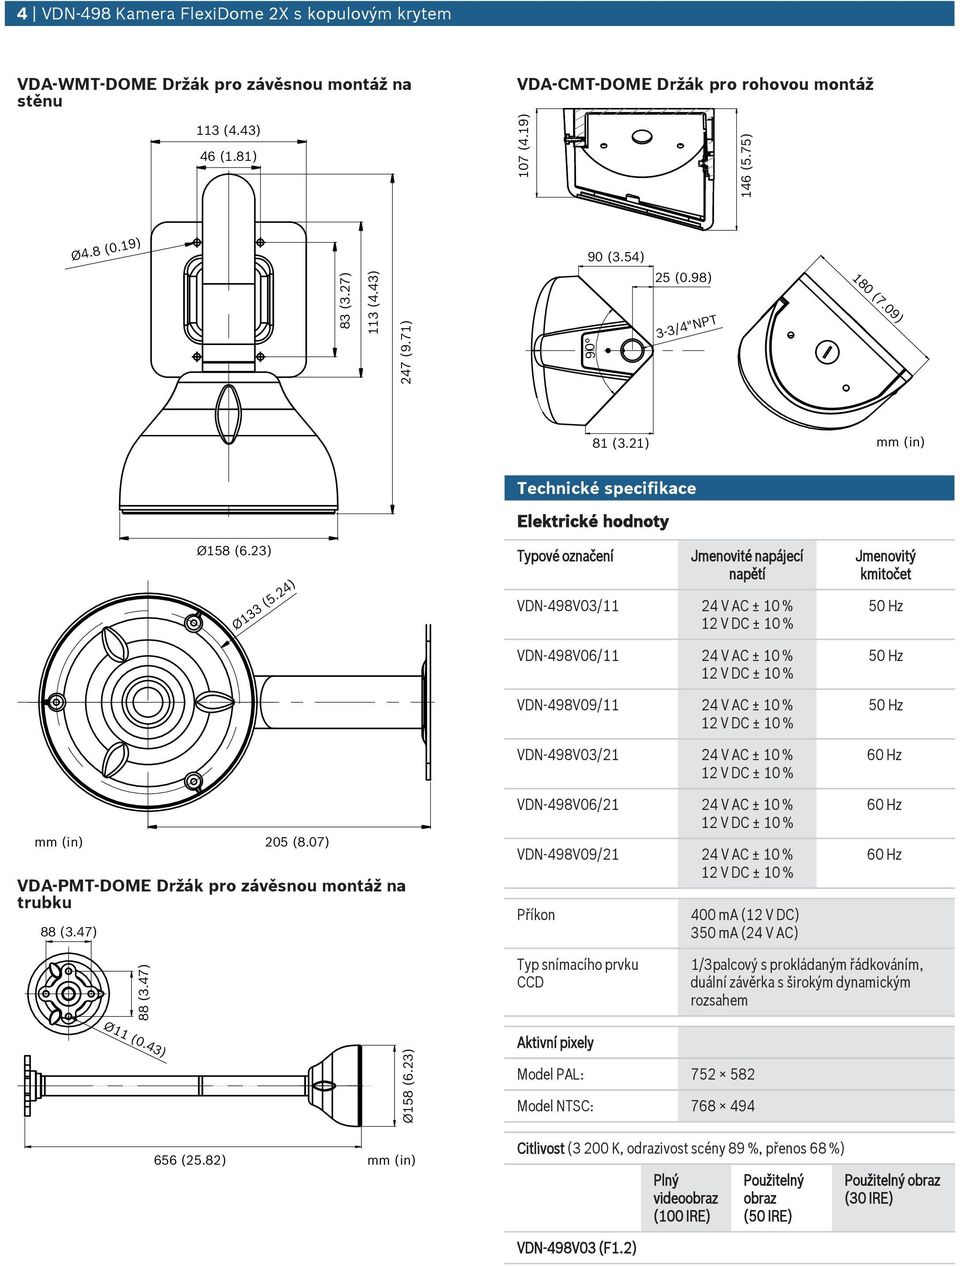 24) Typové označení Jmenovité napájecí napětí VDN-498V03/11 24 V AC ± 10 % Jmenovitý kmitočet 50 Hz mm (in) 205 (8.07) VDA-PMT-DOME Držák pro závěsno montáž na trbk 88 (3.